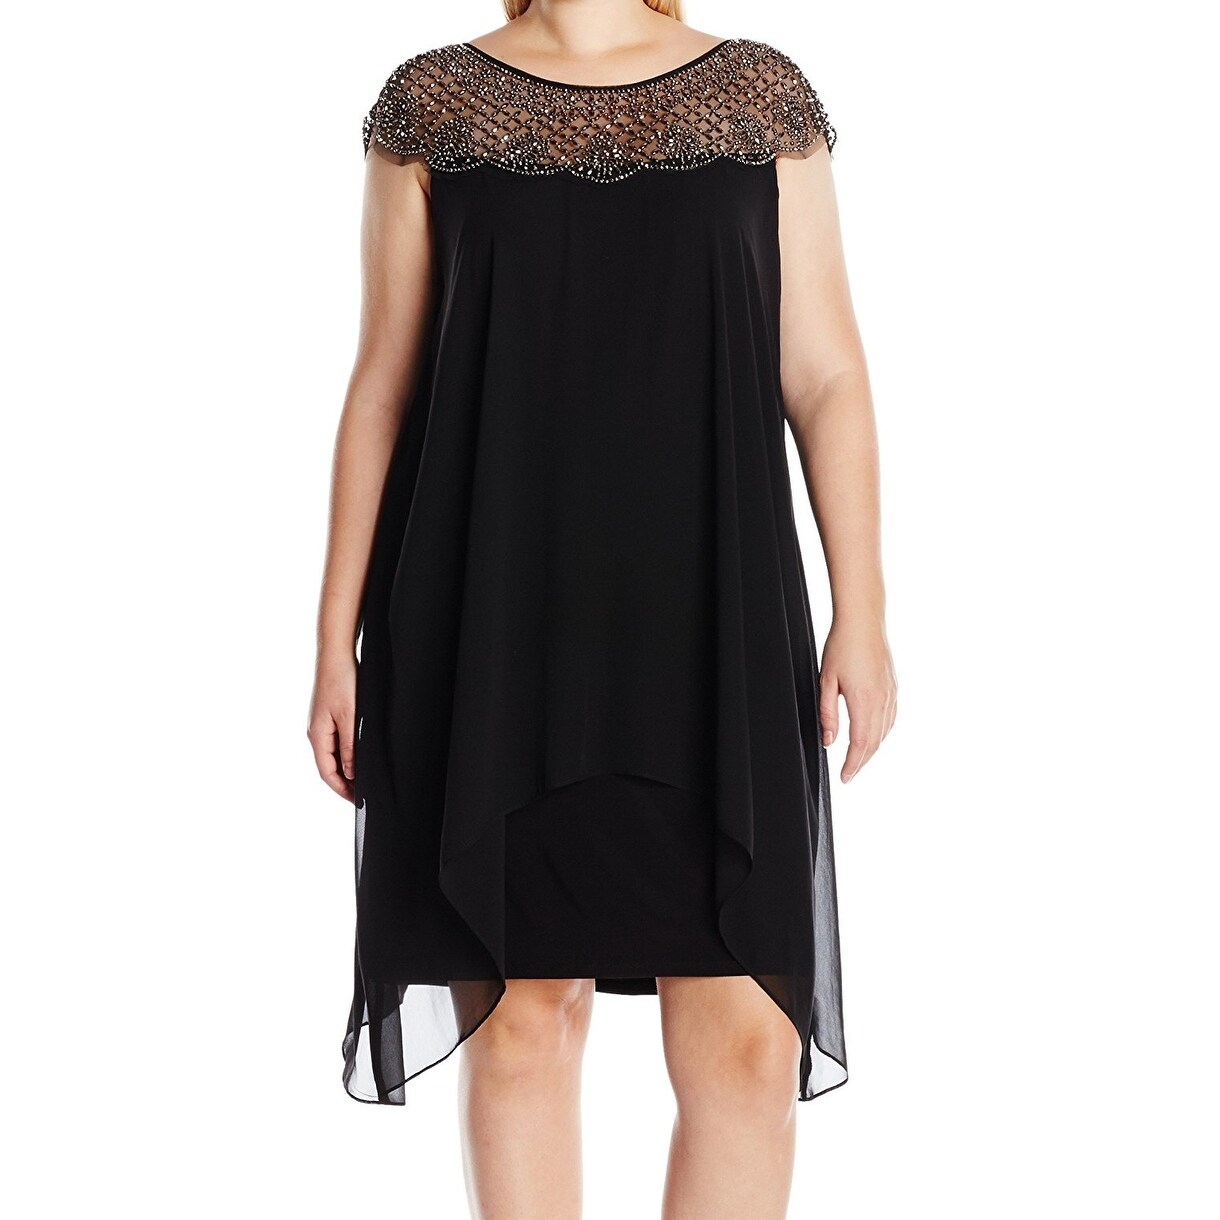 black dress size 16w